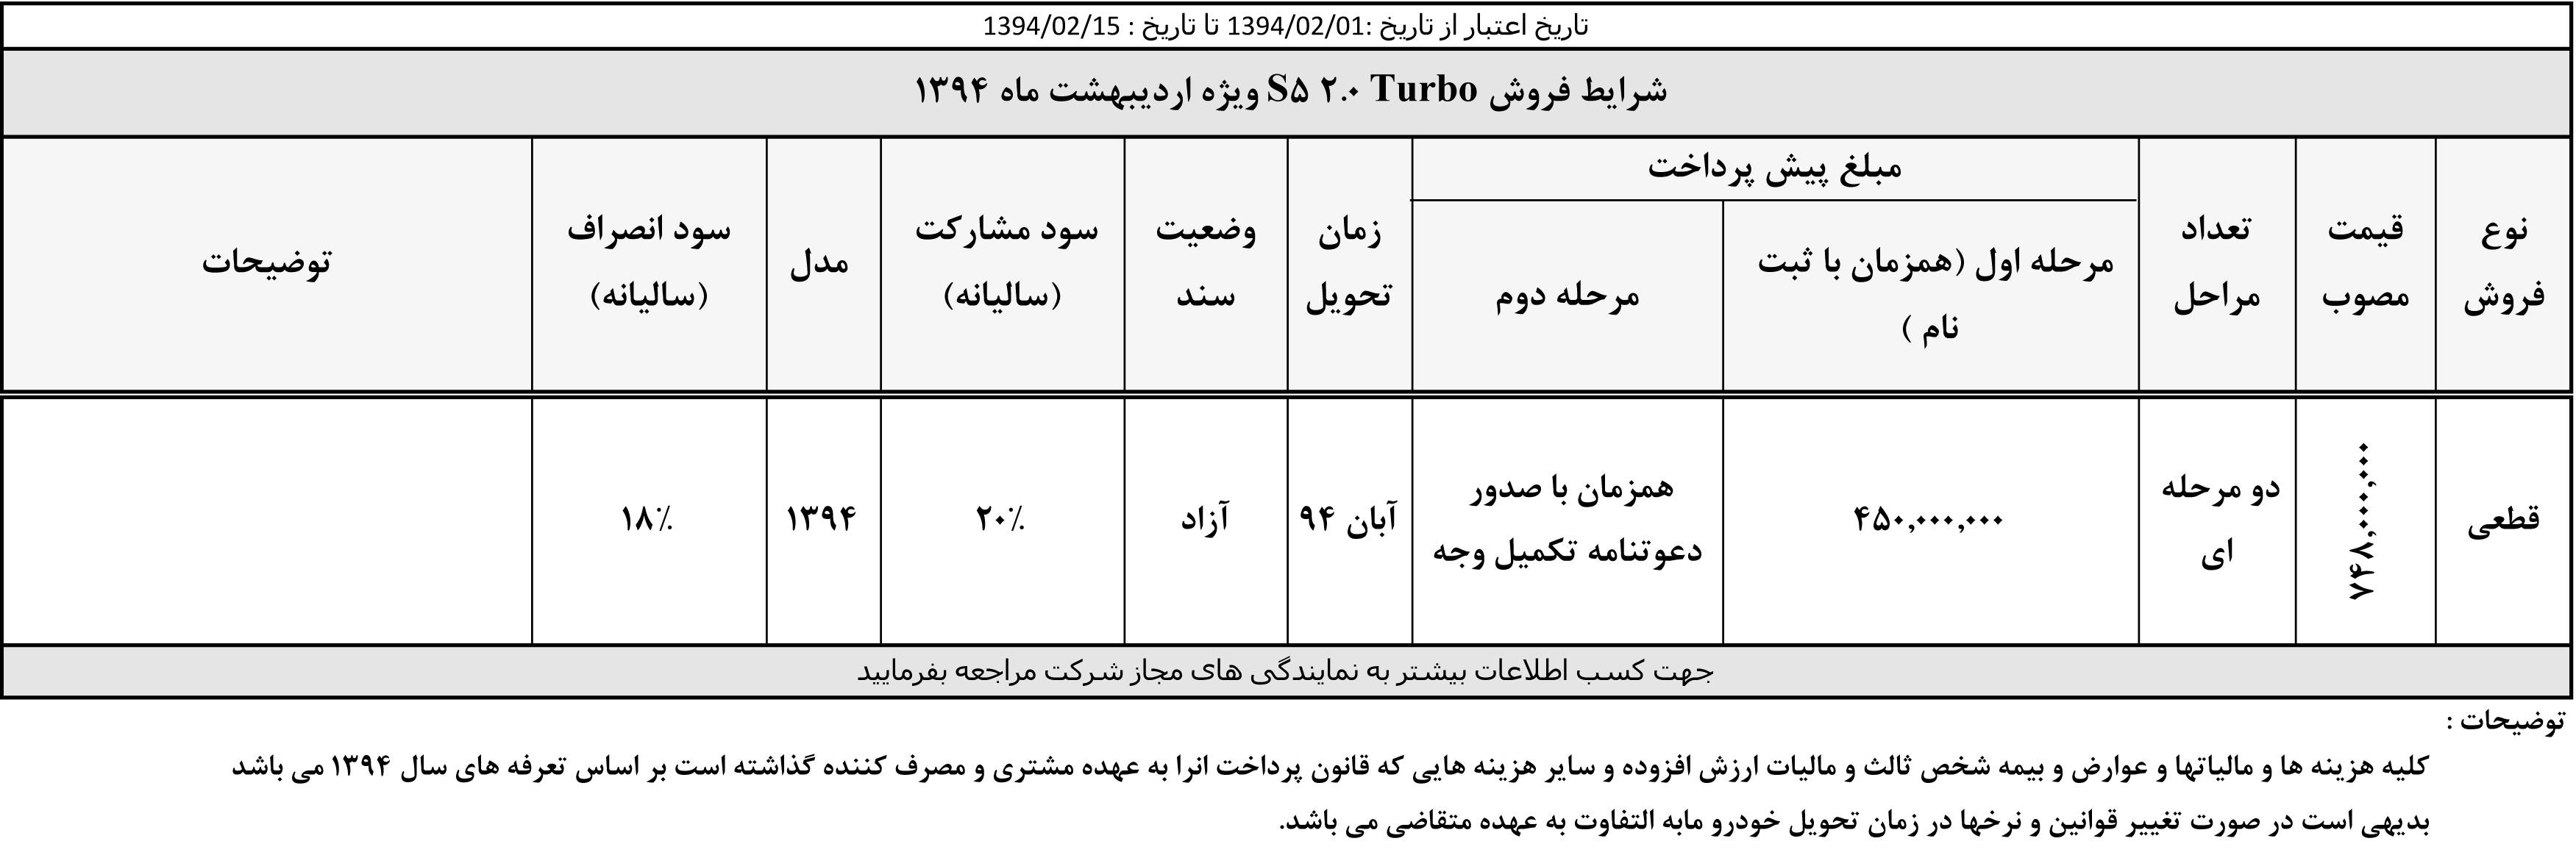  شرایط فروش جدید کرمان موتور اردیبهشت 94 